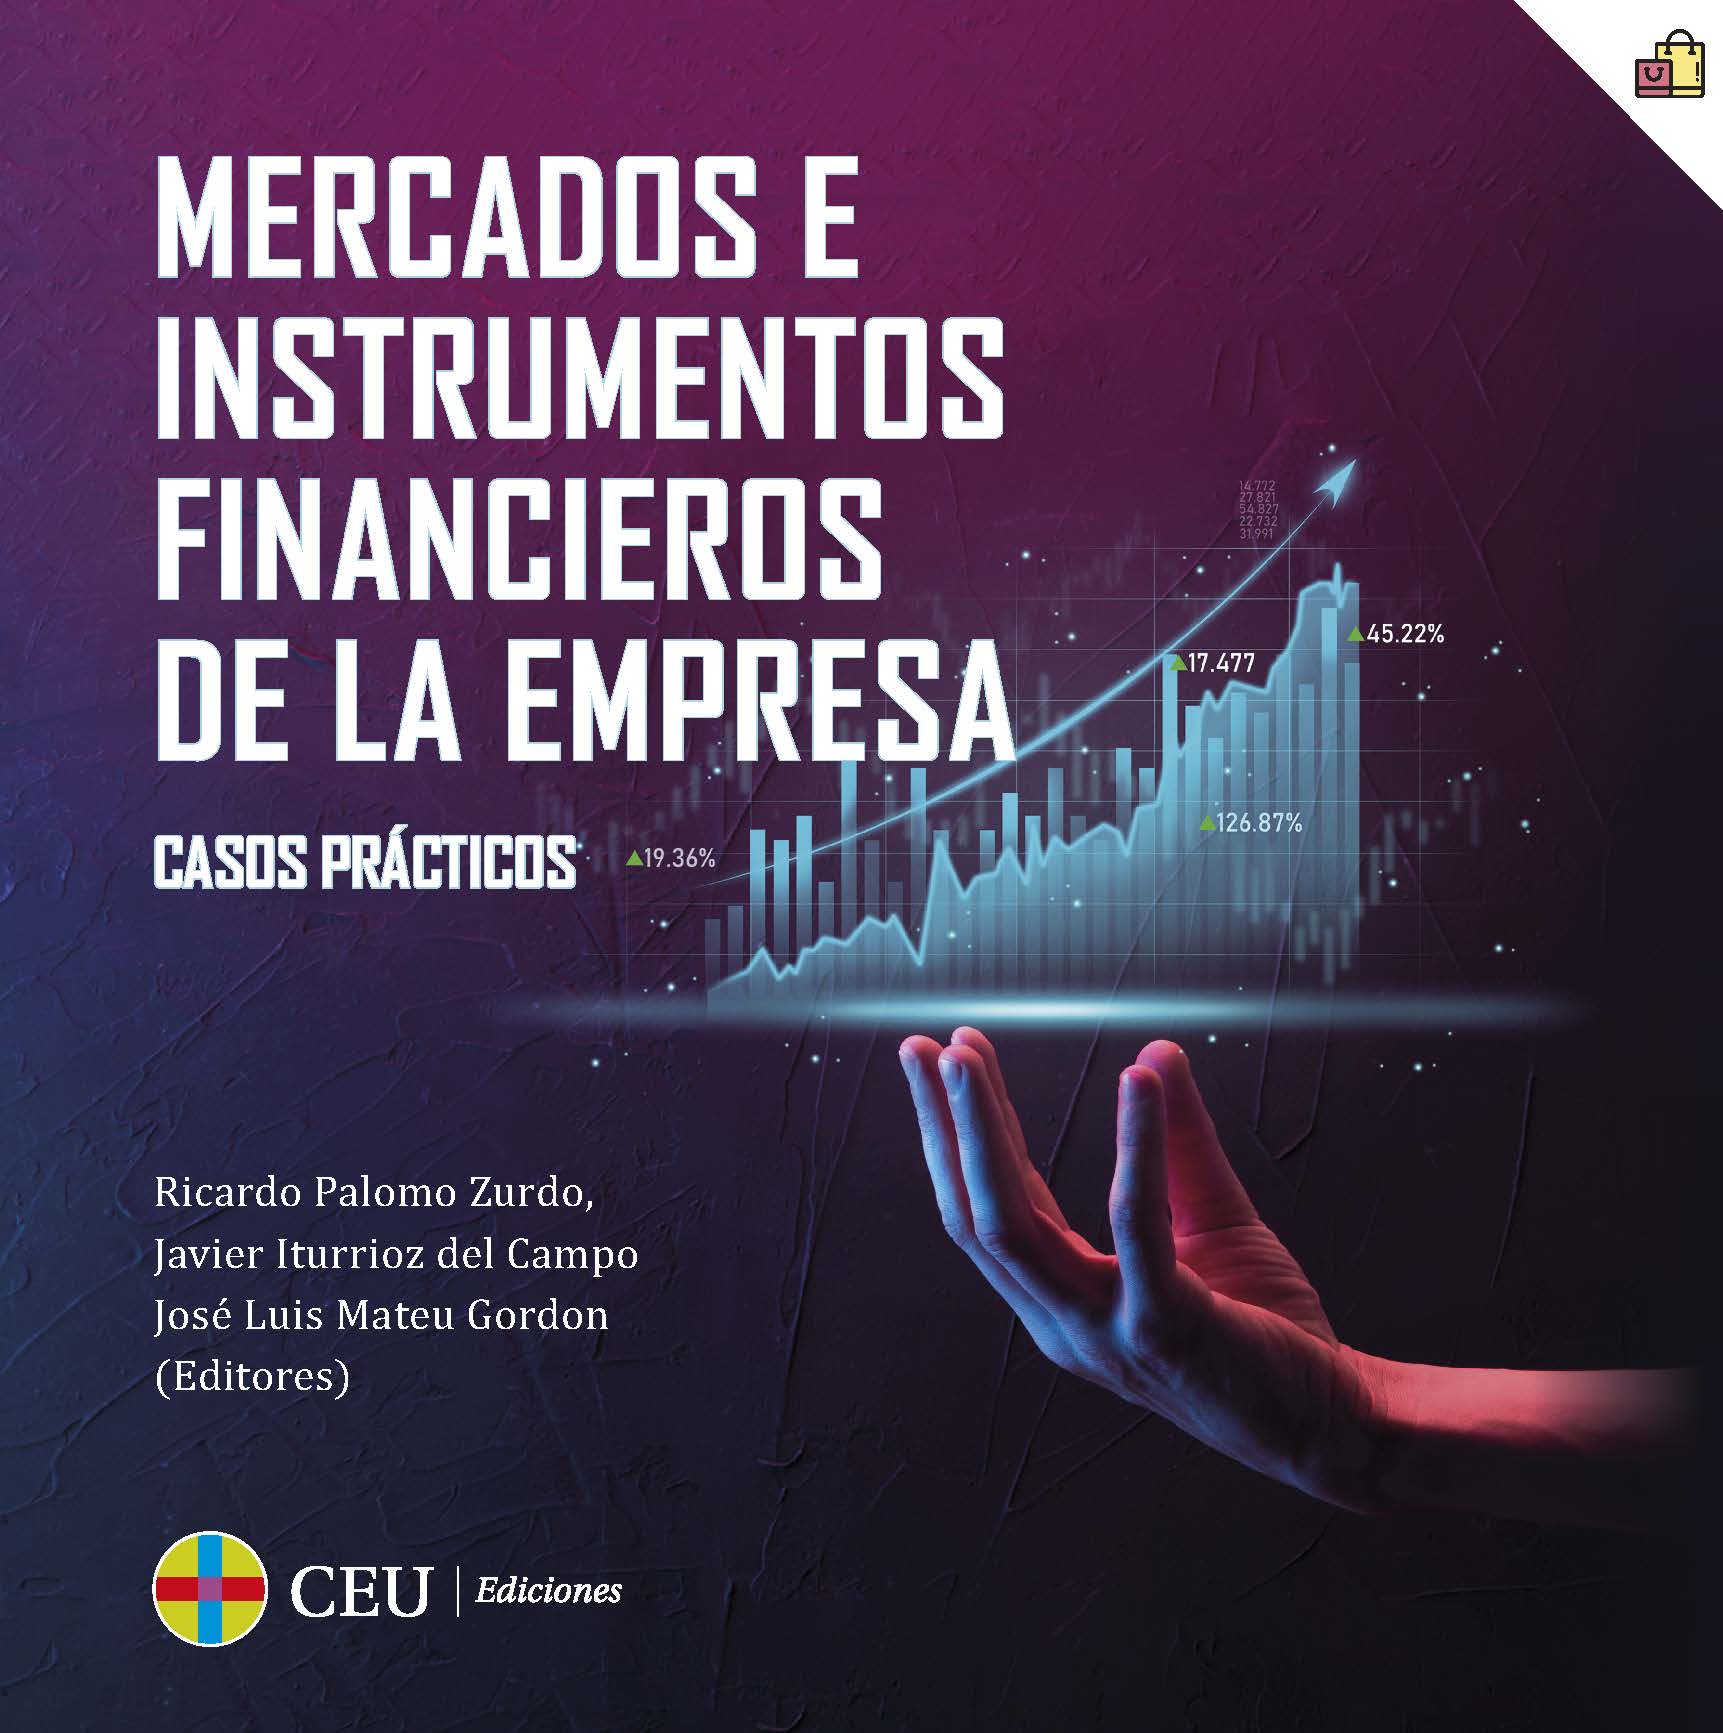 Imagen de portada del libro Mercados e Instrumentos Financieros de la empresa